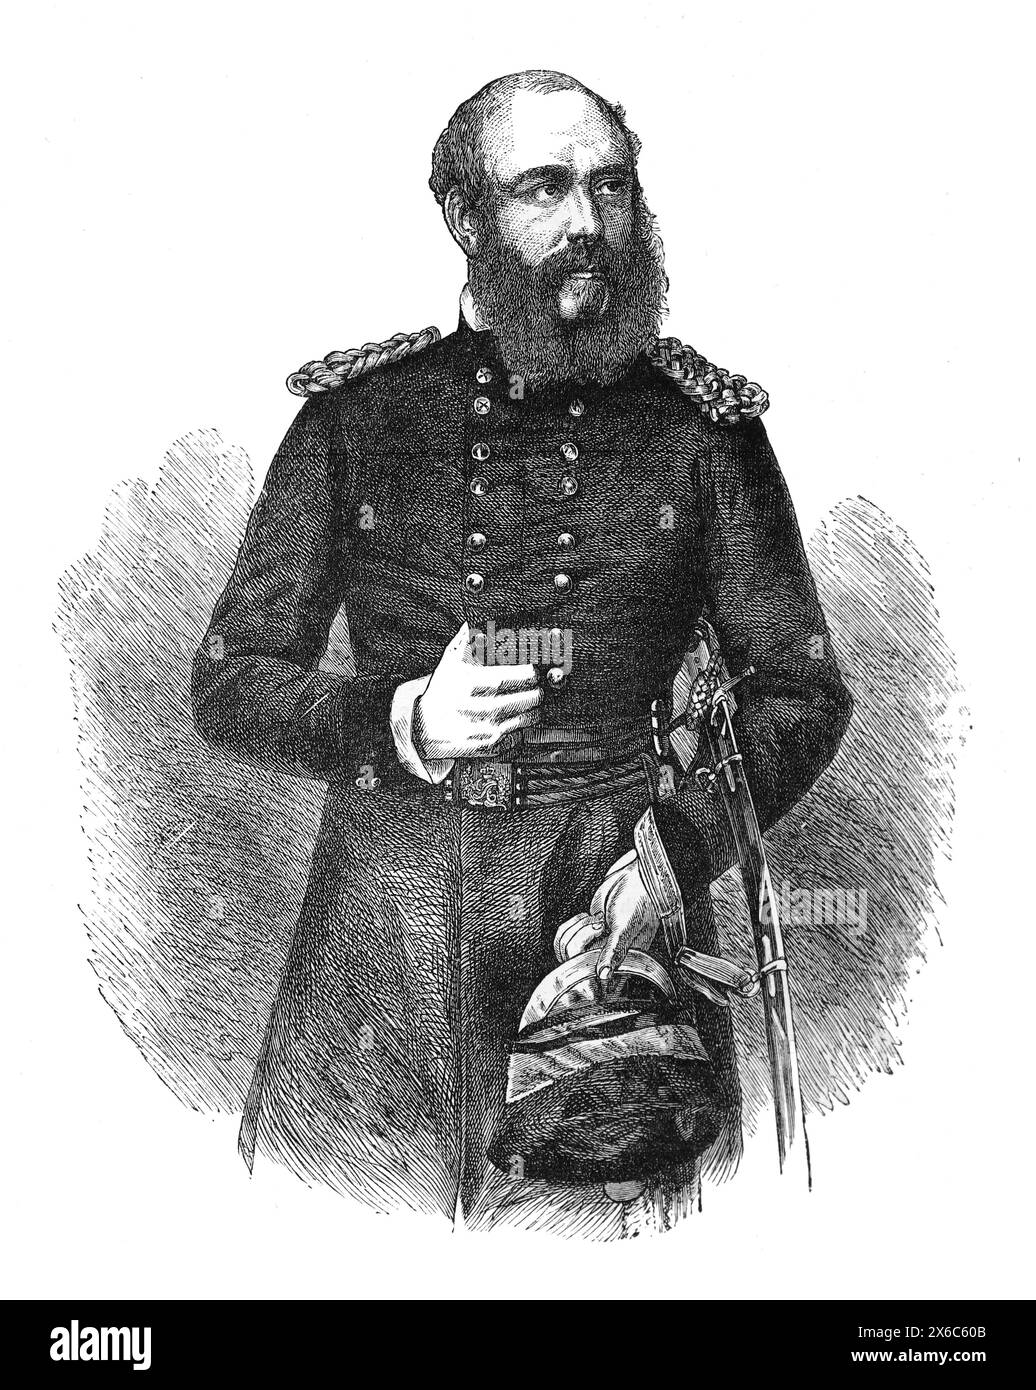 Porträt von Prinz George, Herzog von Cambridge (George William Frederick Charles; 1819–1904), Kommandeur in Chielf der britischen Streitkräfte. Schwarzweiß-Illustration Stockfoto